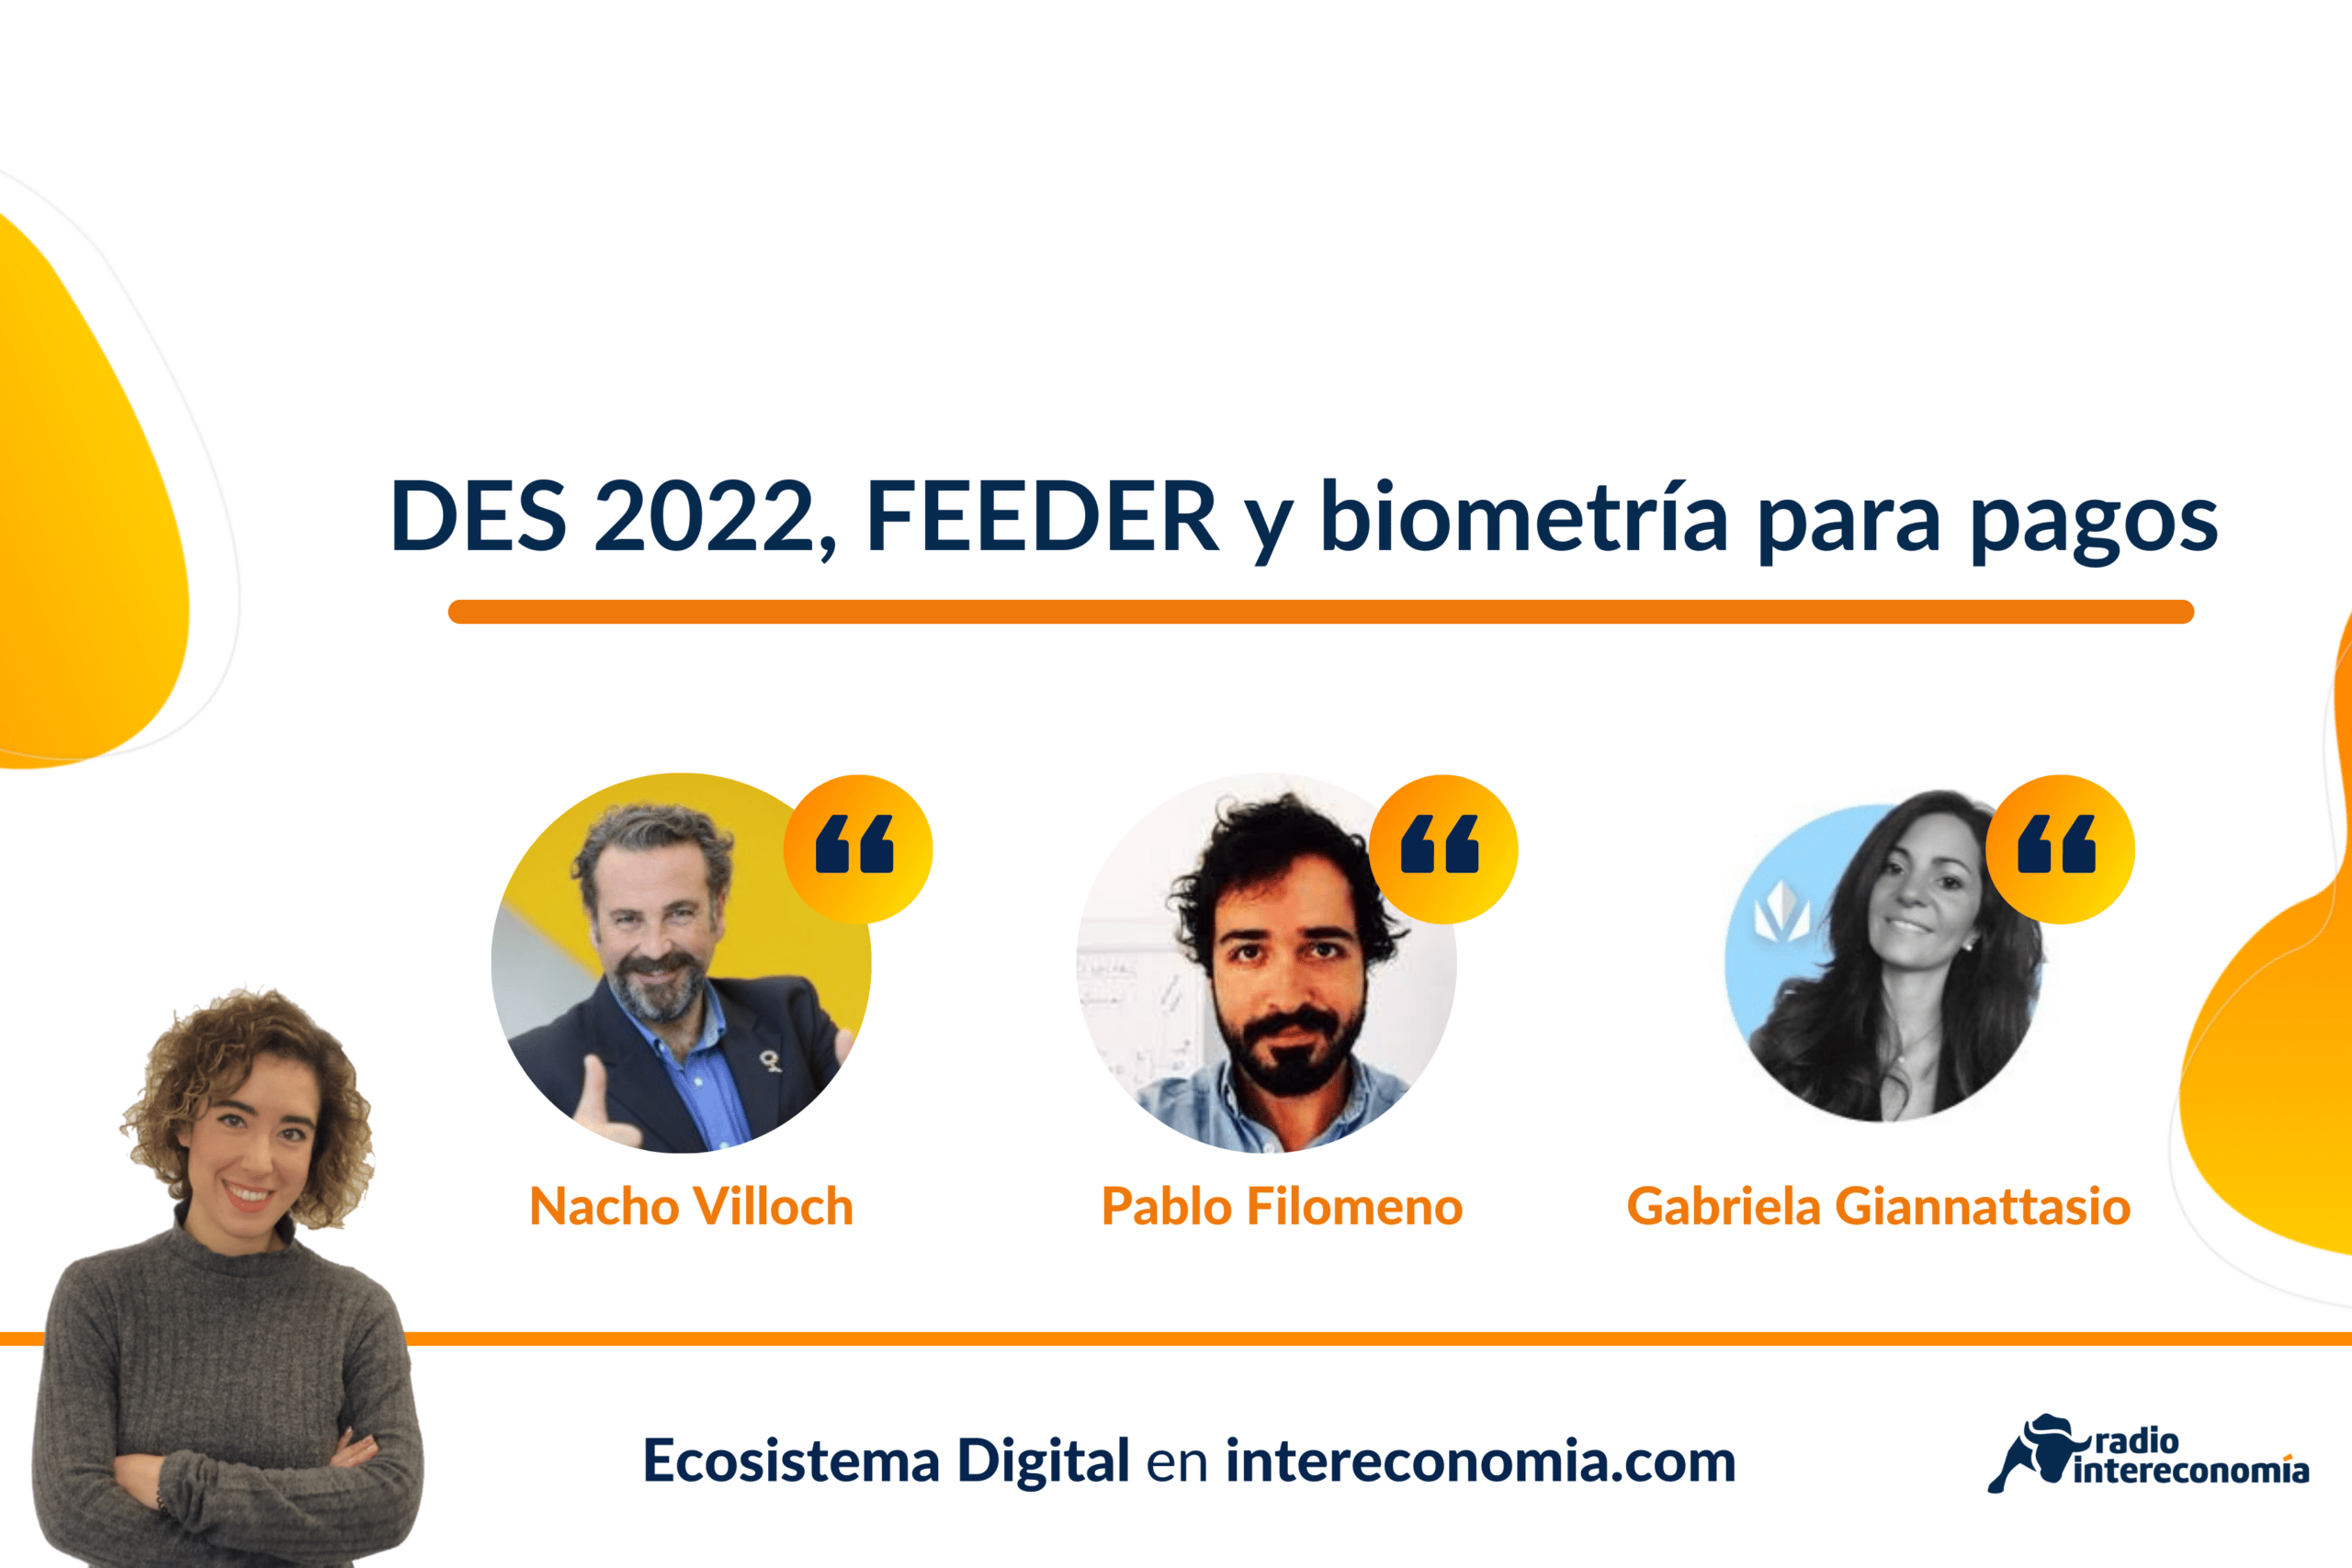 Ecosistema Digital: DES 2022, Feeder y biometría y tokenización para revolucionar los pagos